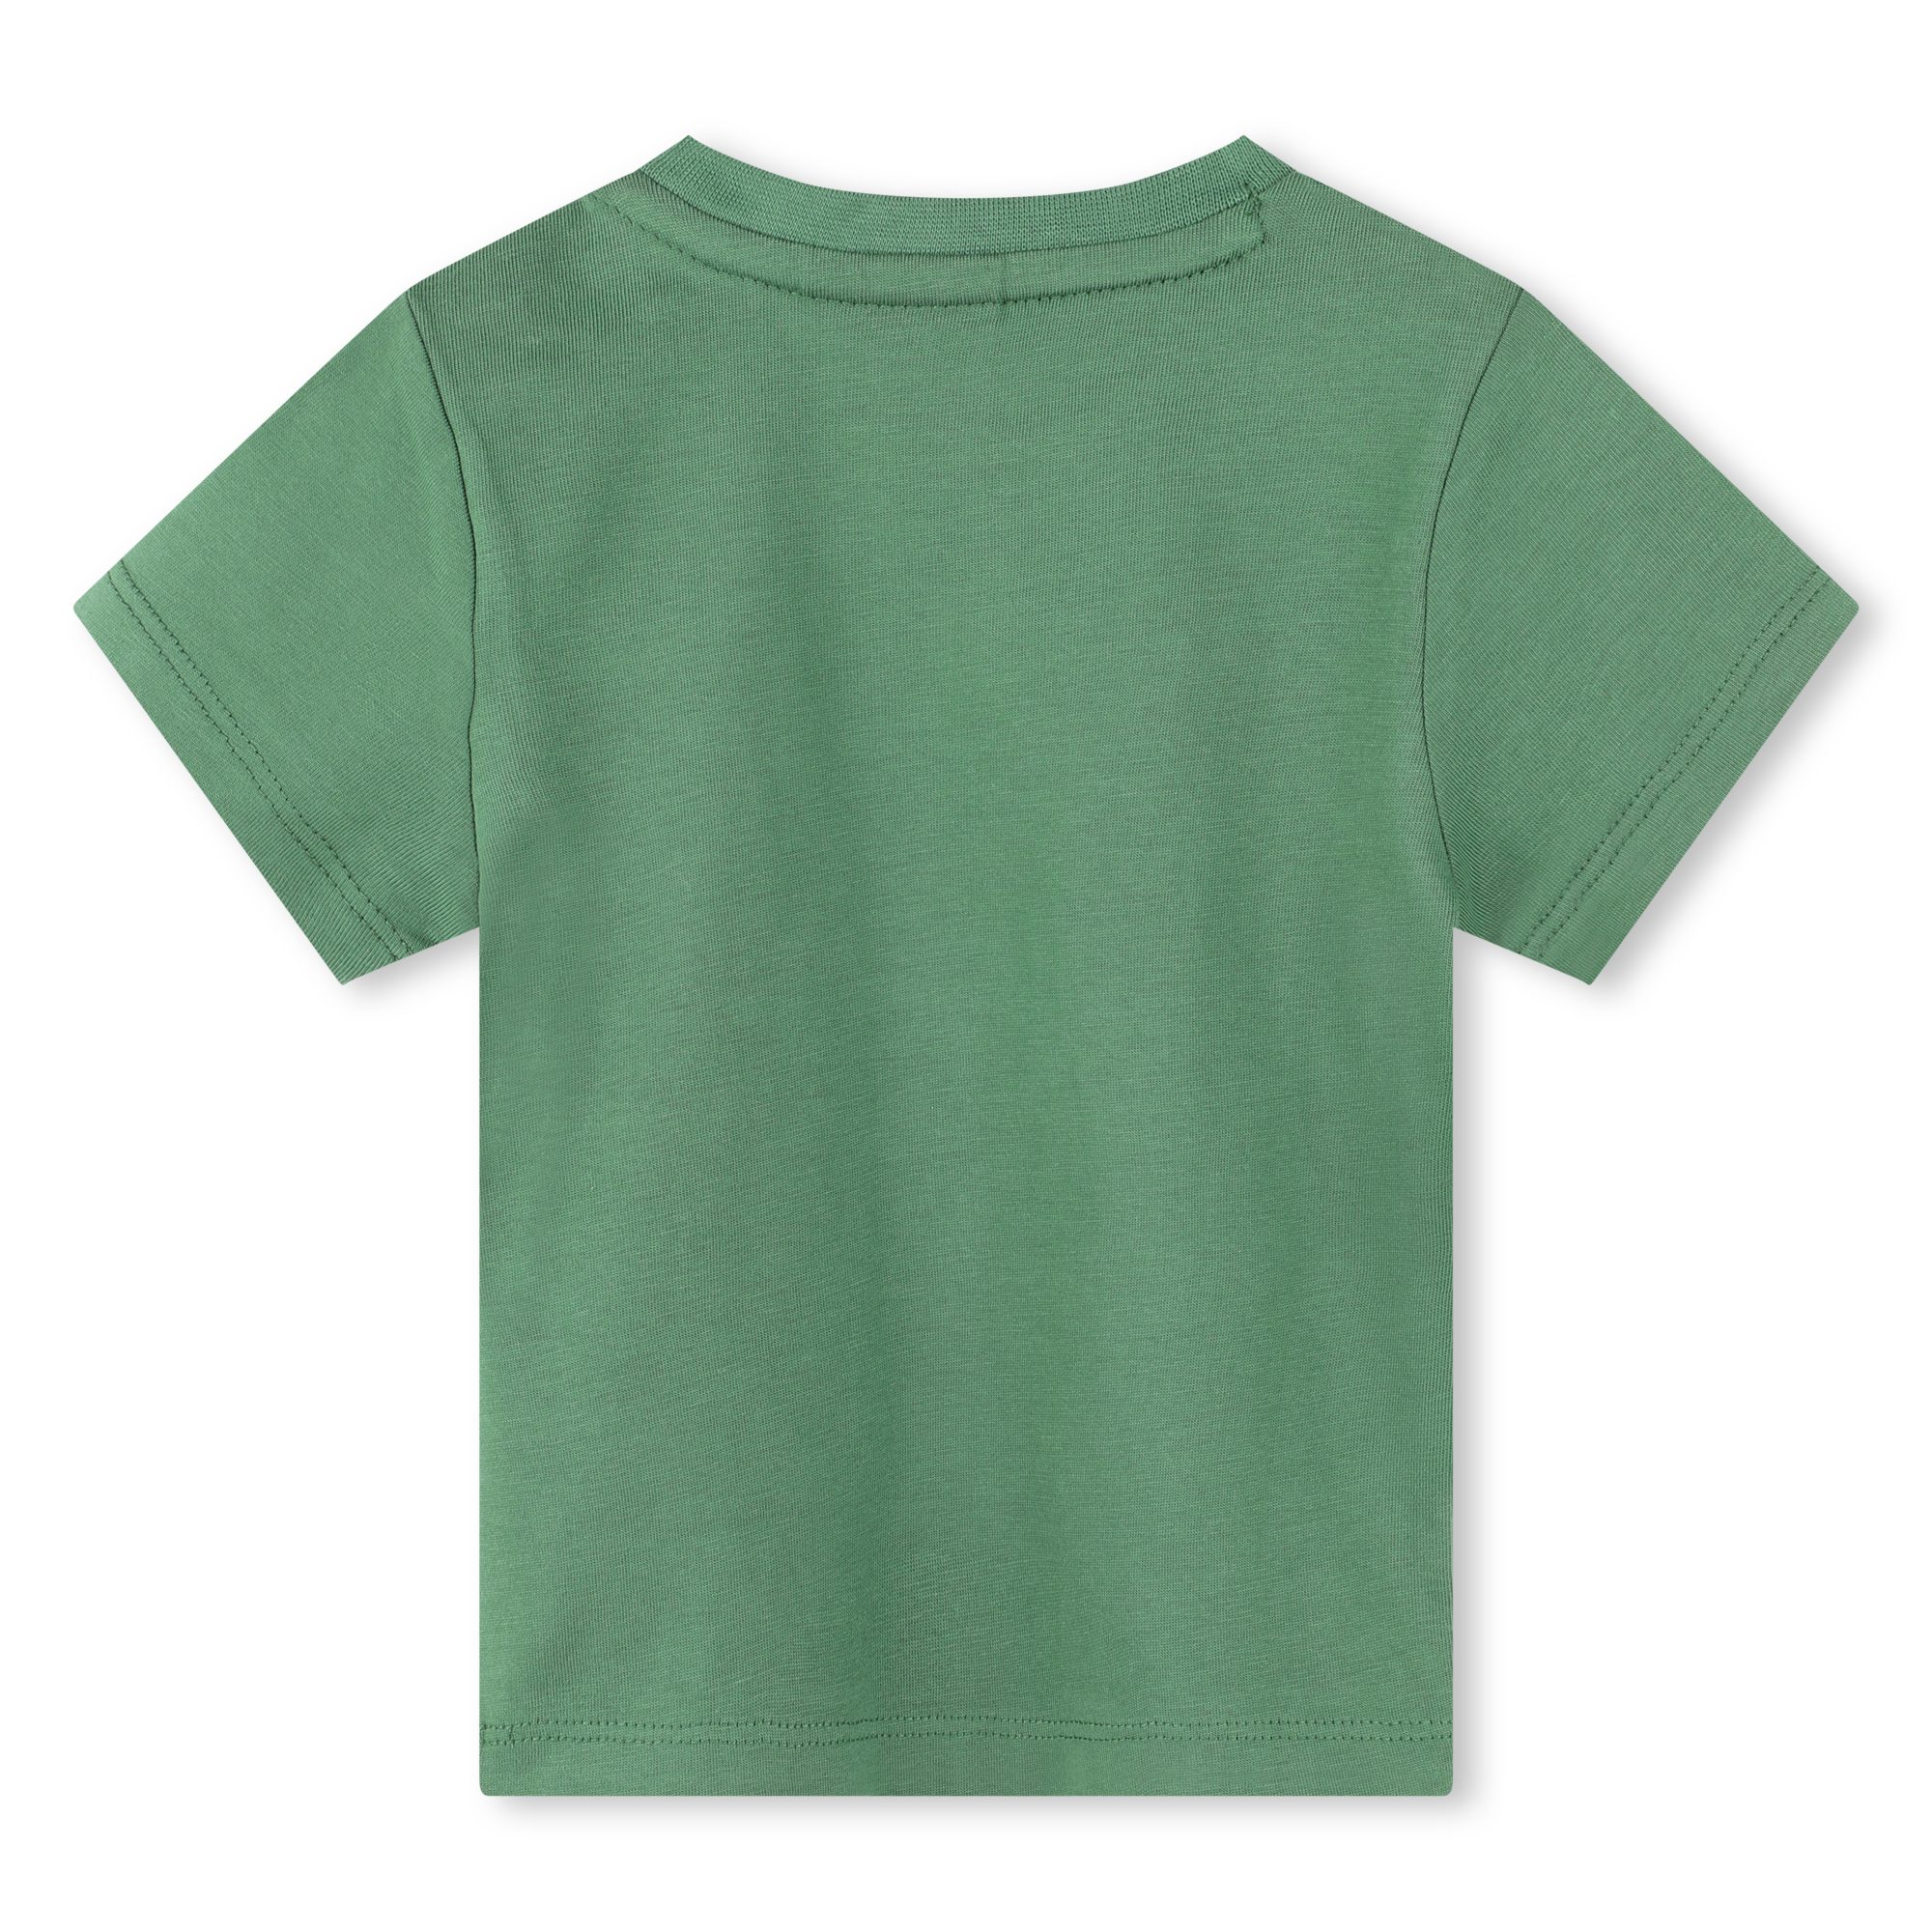 T-shirt maniche corte cotone BOSS Per RAGAZZO